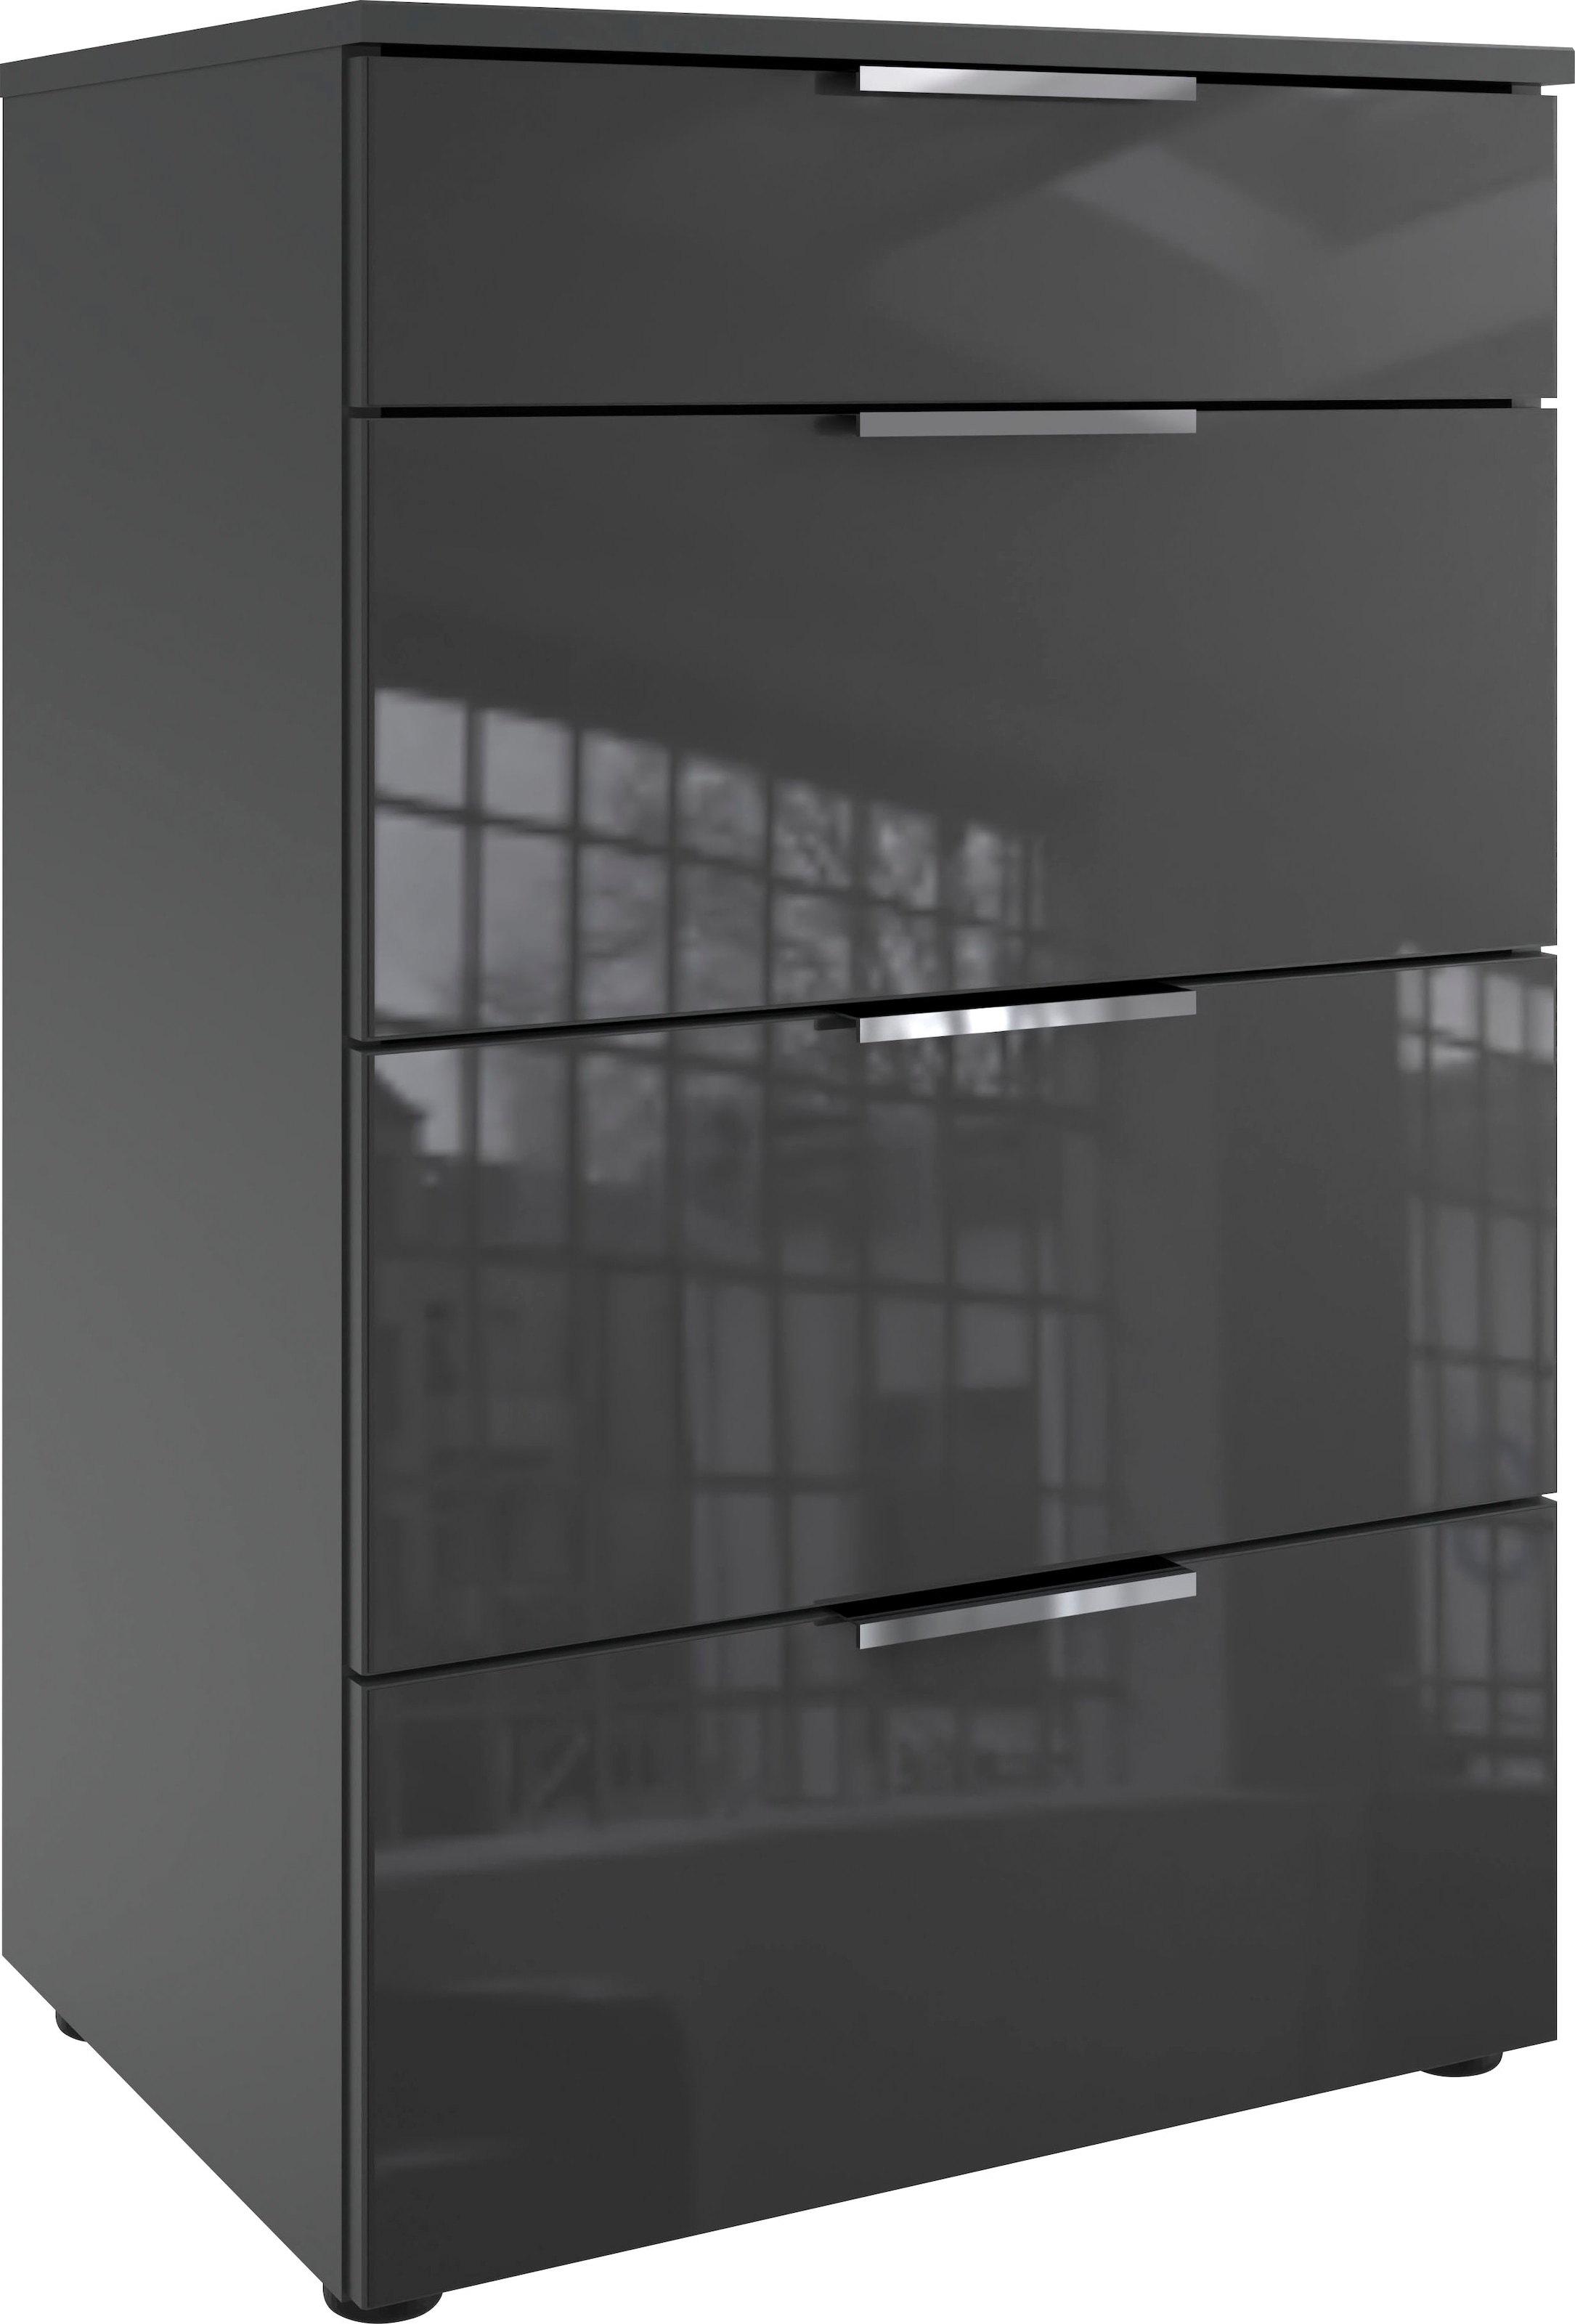 Wimex Schubkastenkommode »Level36 C by fresh to go«, mit Glaselementen auf der Front, soft-close Funktion, 54cm breit